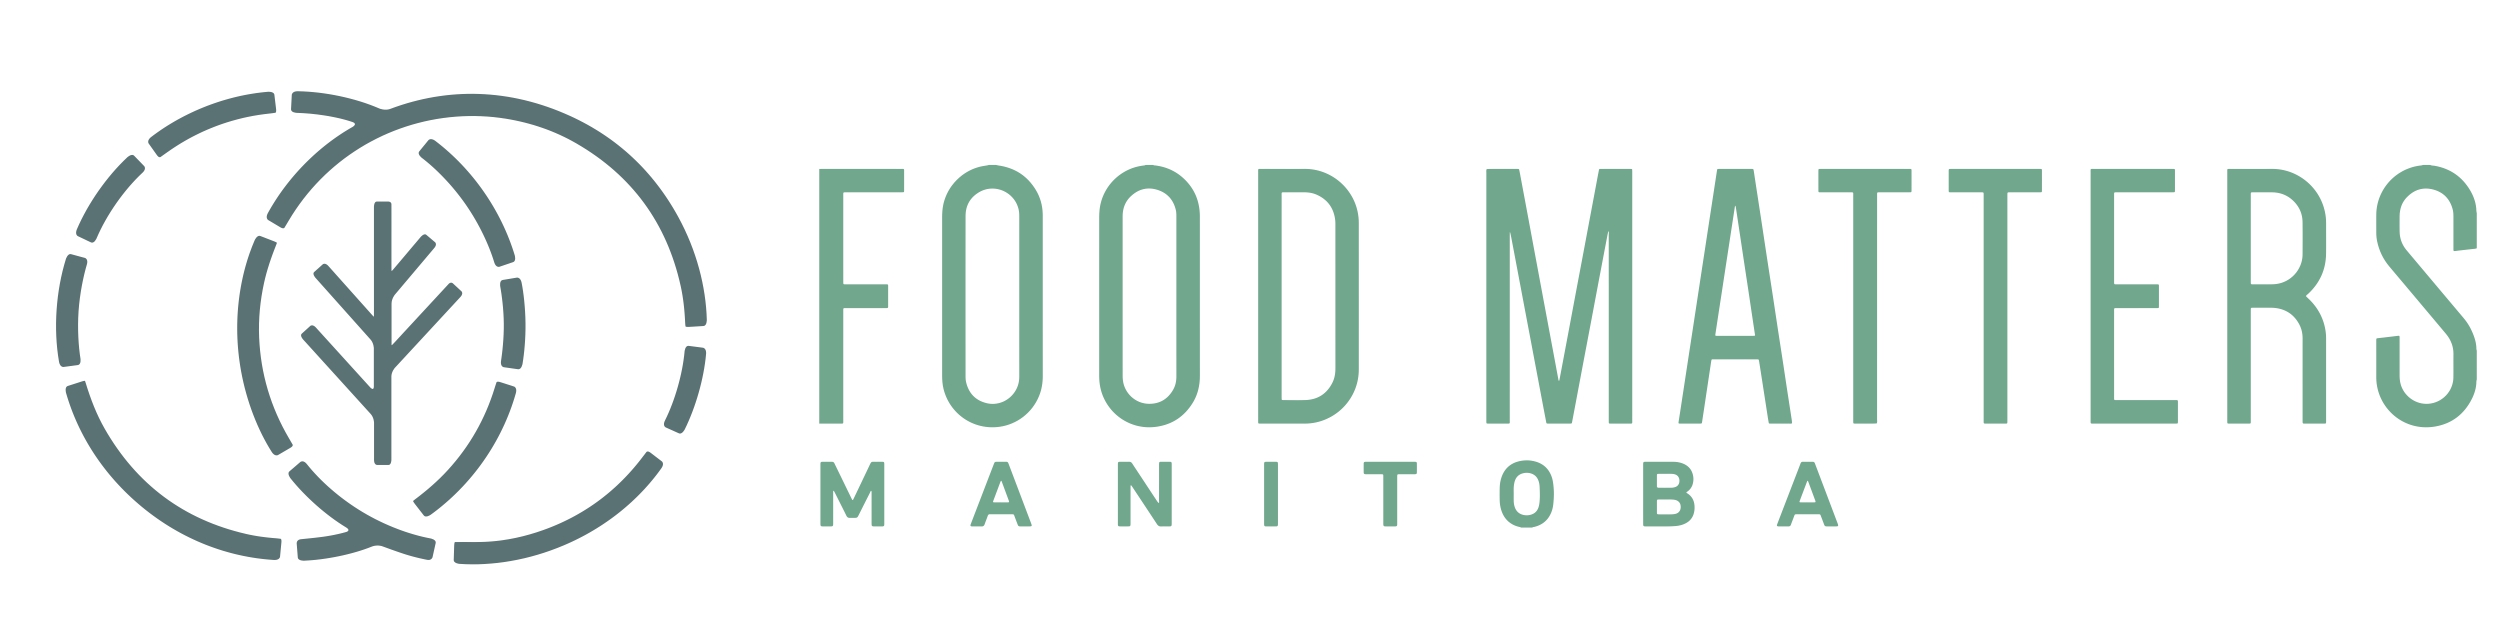 Food Matters Manitoba logo